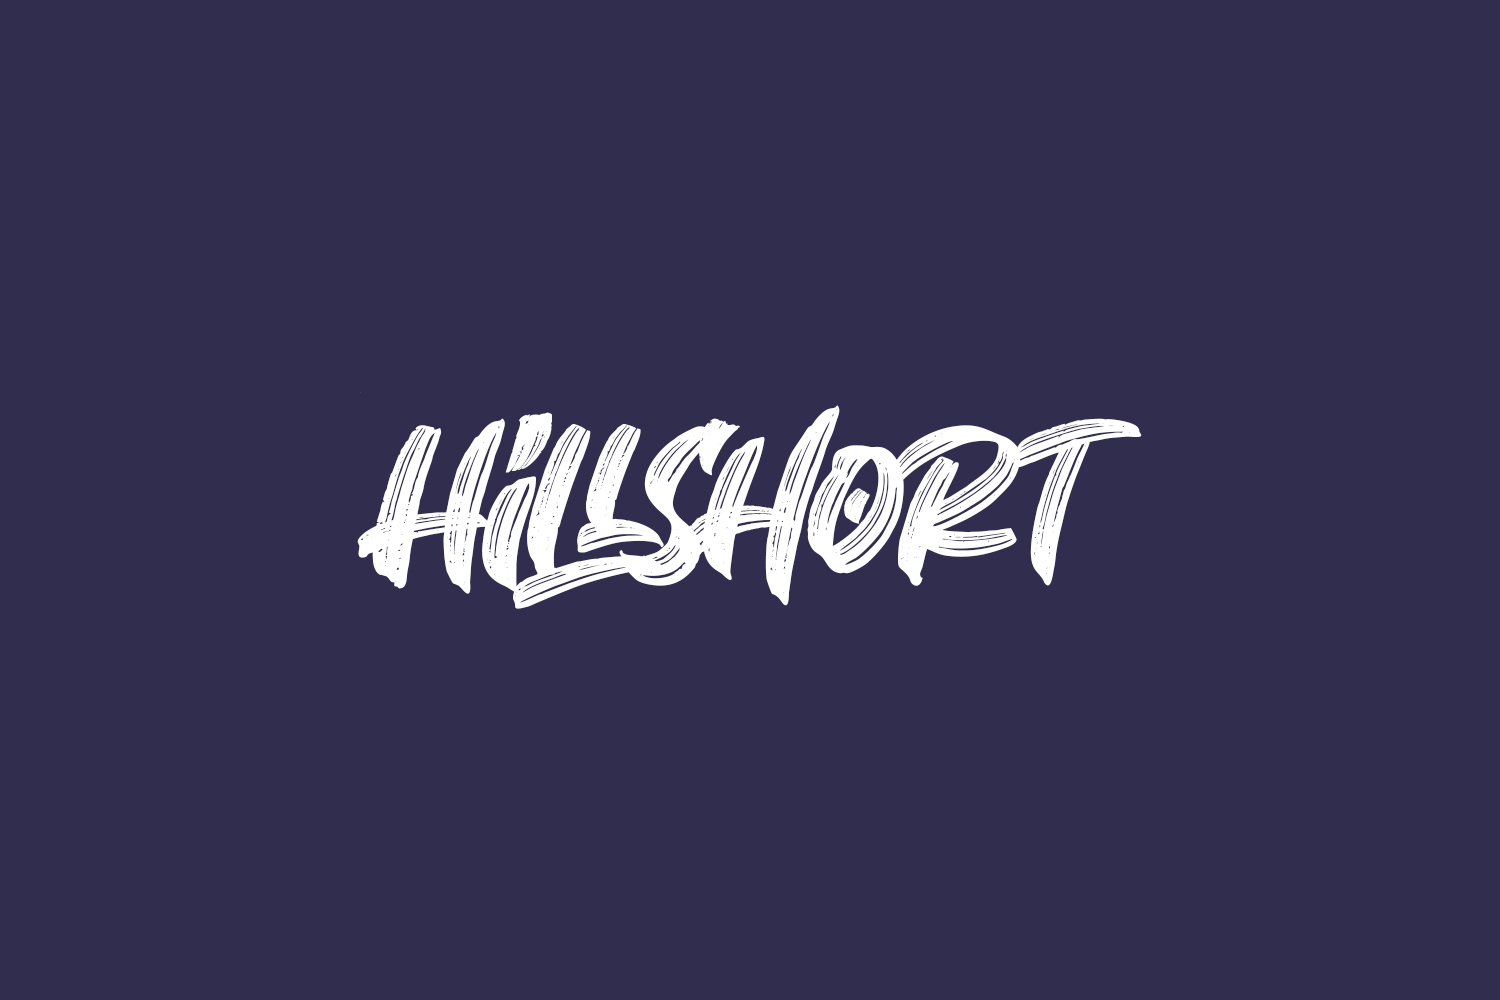 Hillshort Free Font